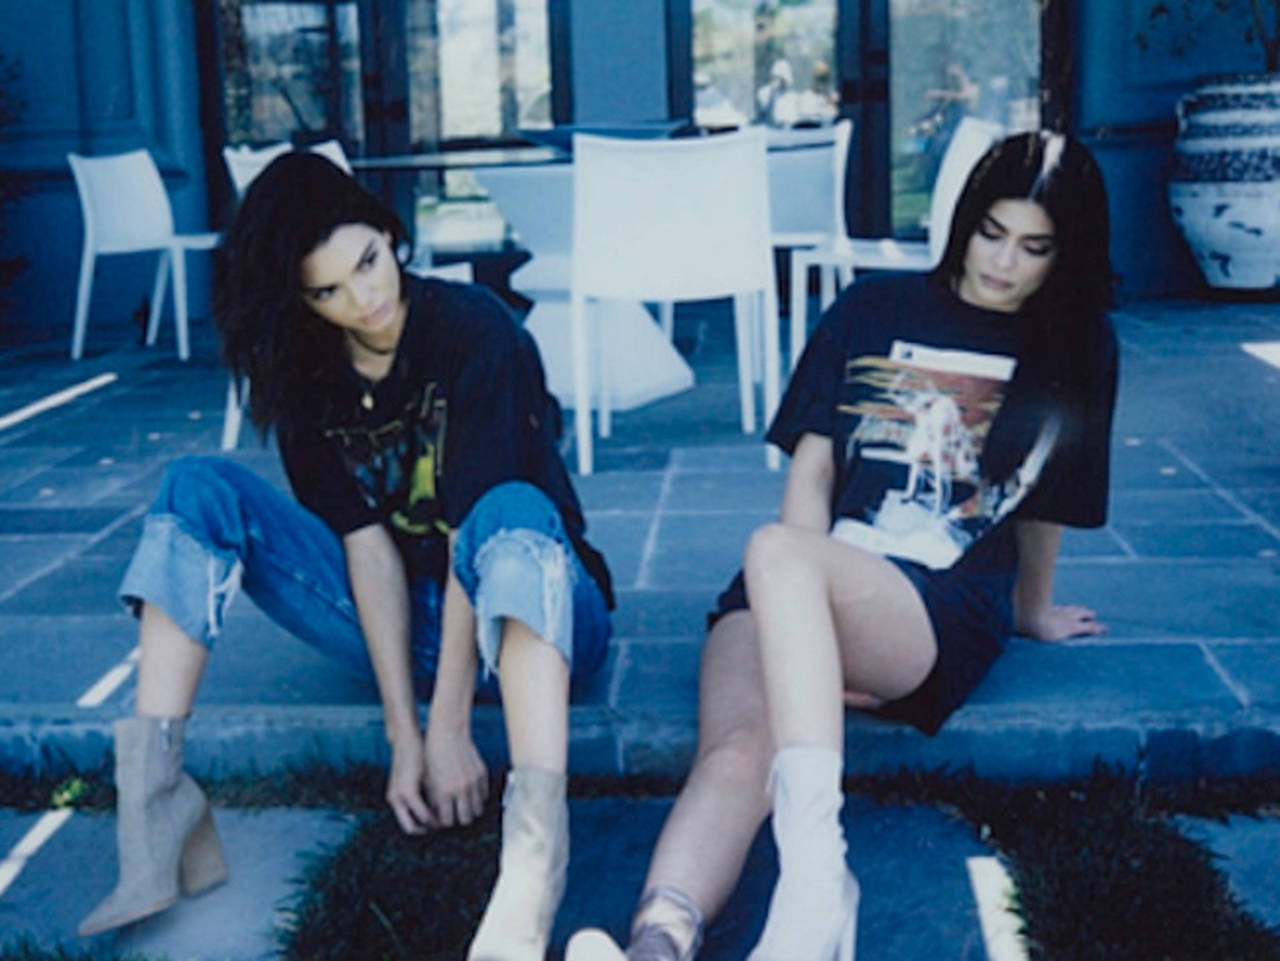 Plagio. Las hermanas Kendall y Kylie Jenner sacaron a la venta playeras de Tupac sin tener los derechos de las fotografías.